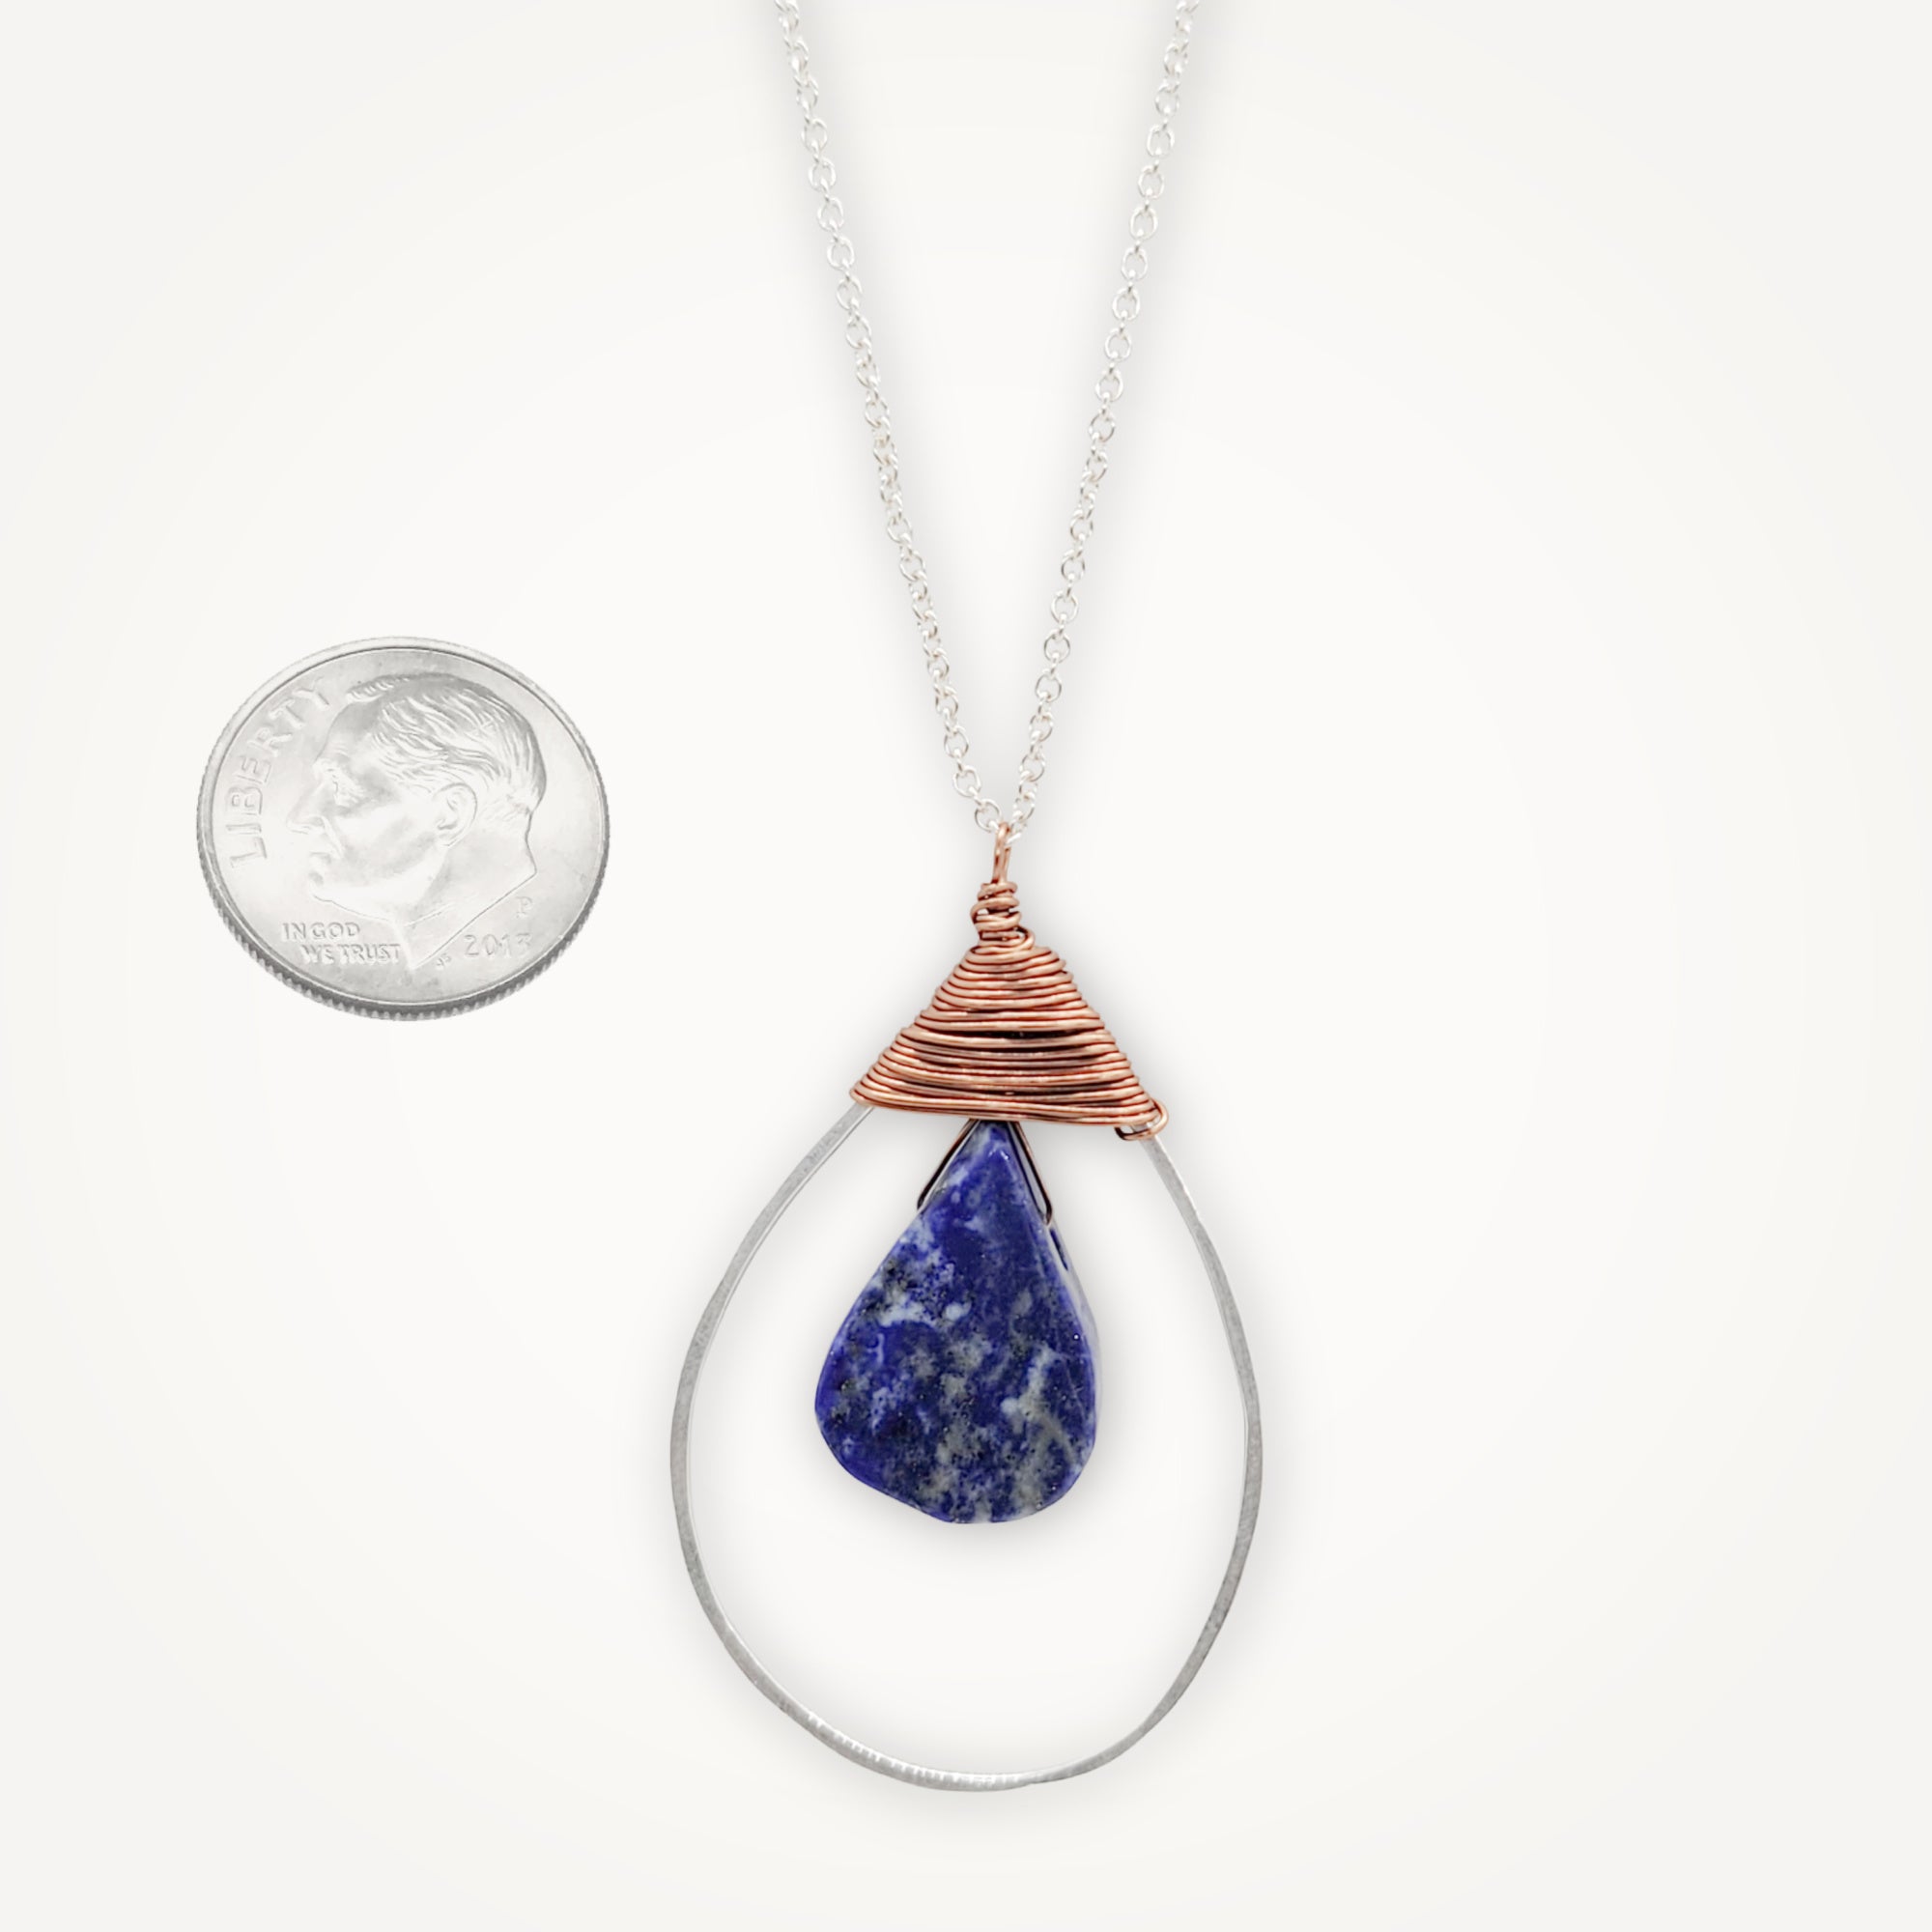 Mixed Metal Lapis Lazuli Necklace